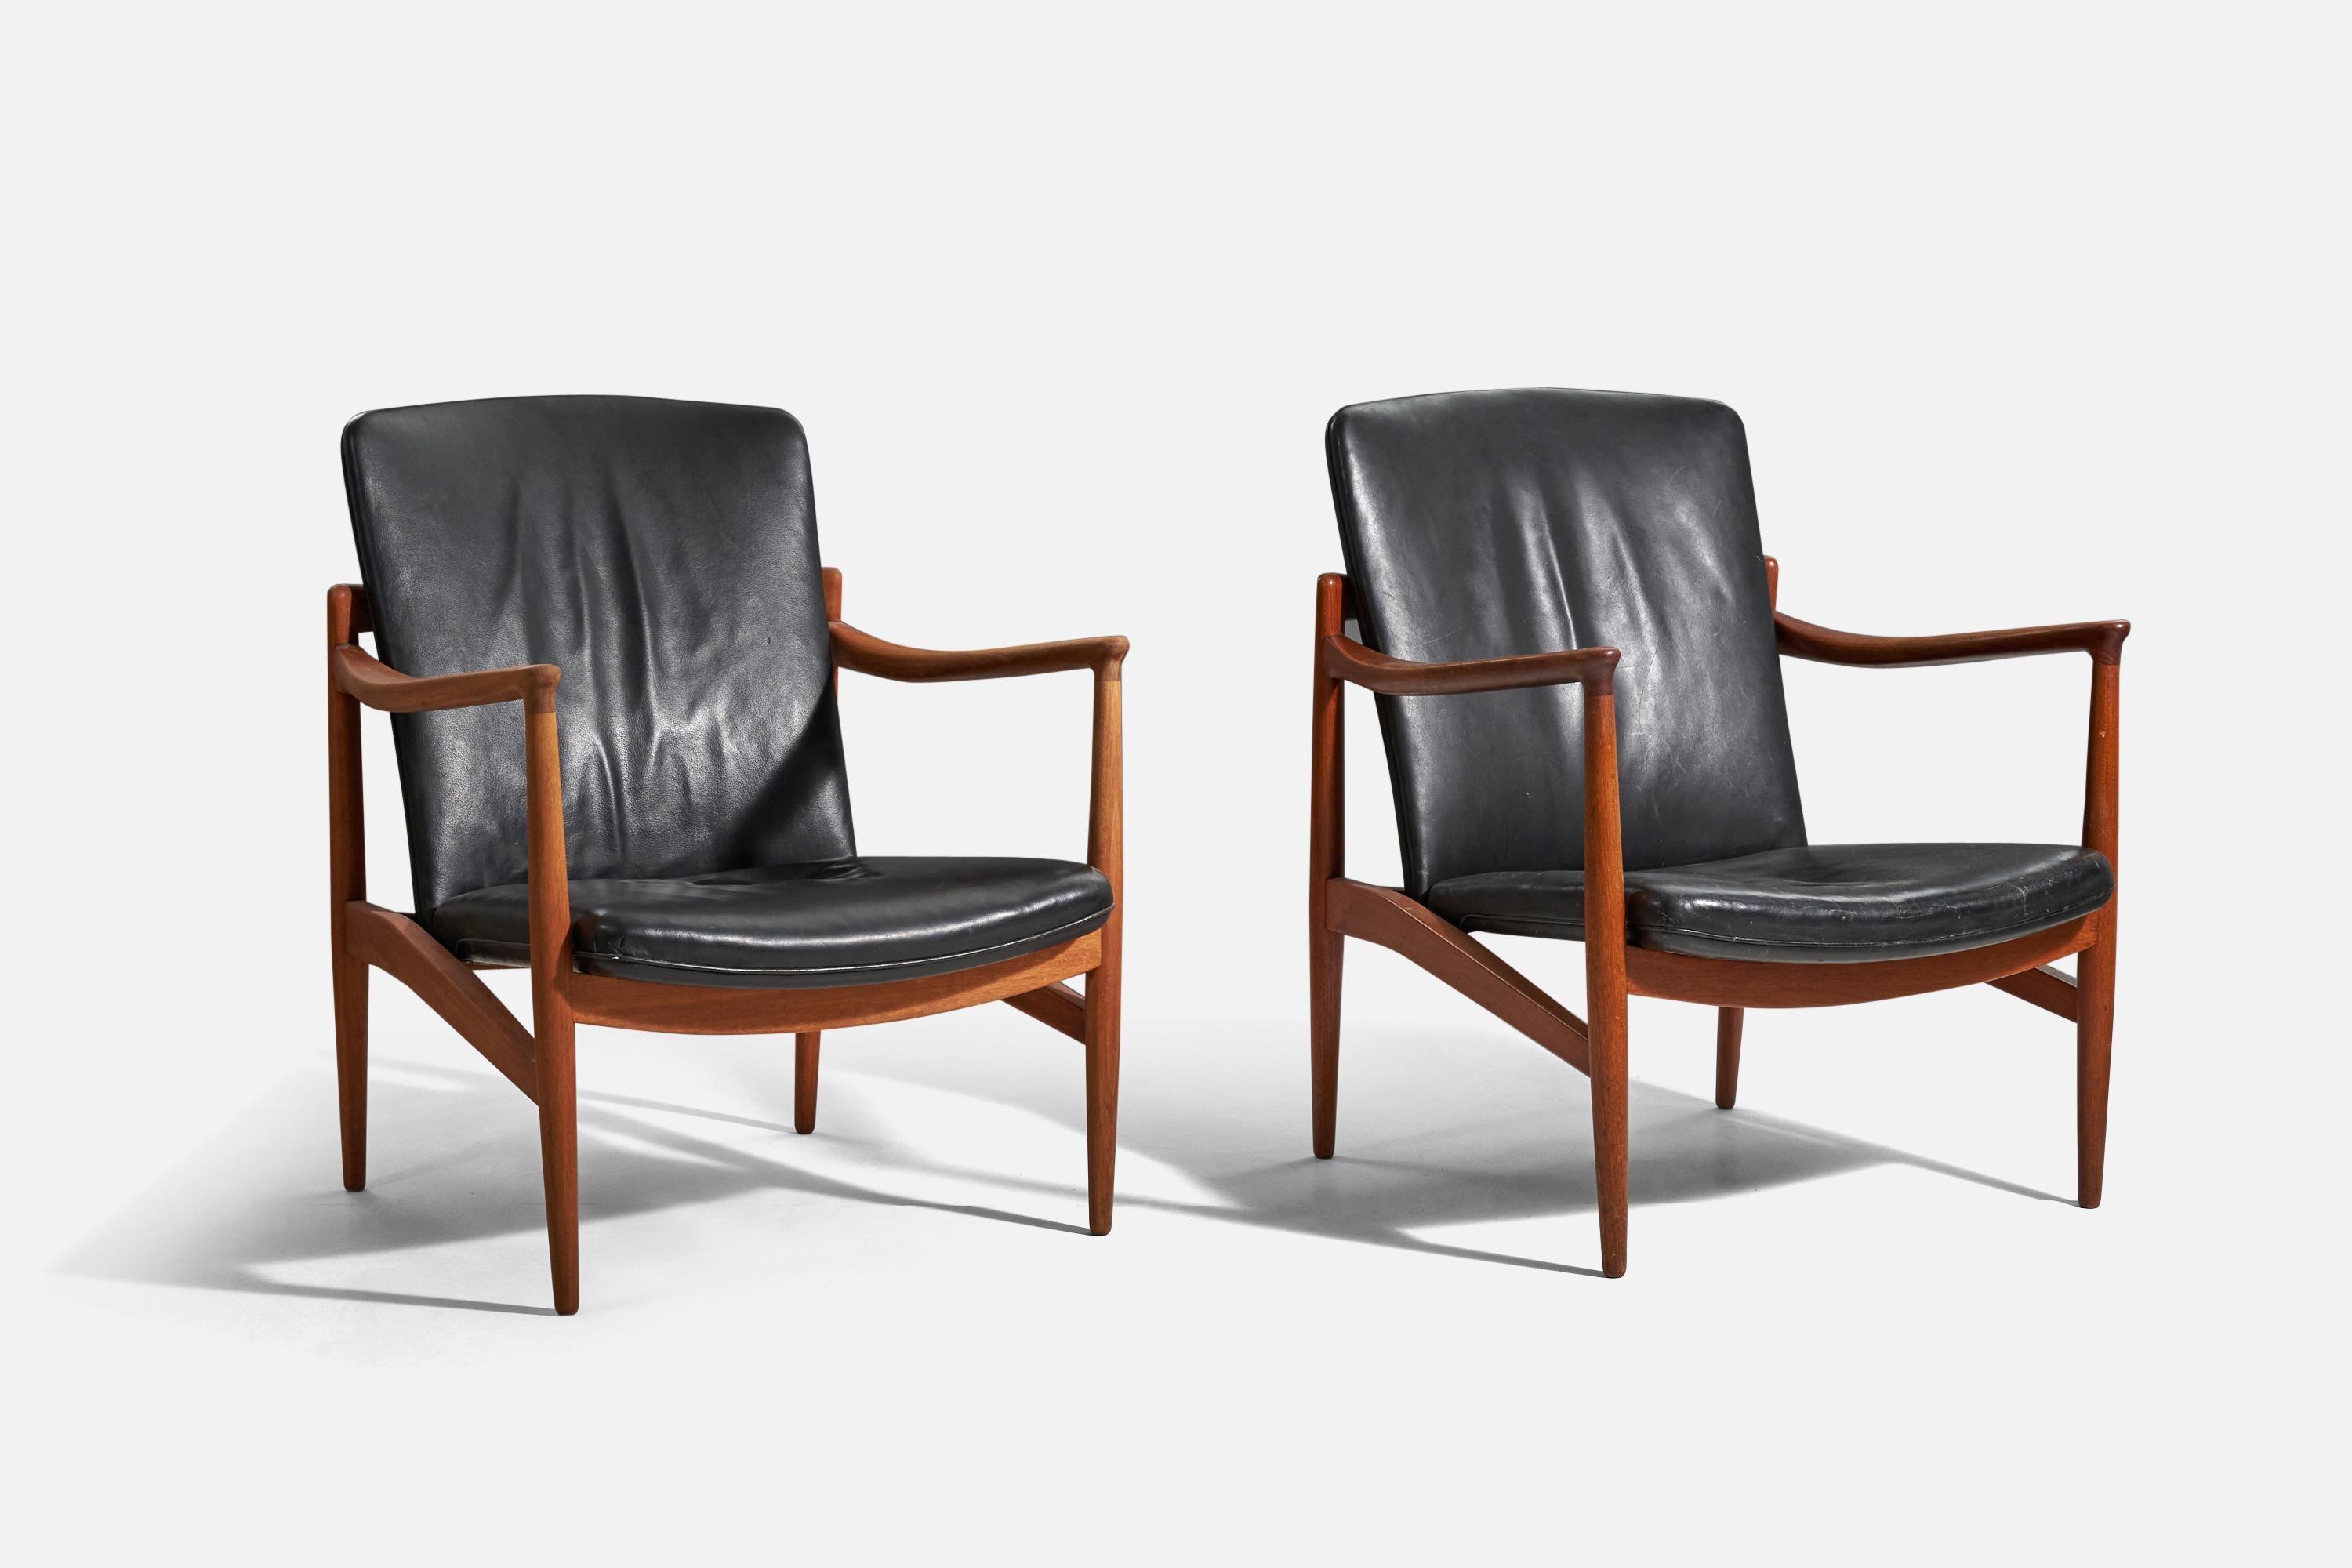 Paire de chaises longues réglables en teck et en cuir, conçues et produites par Jacob Kjaer, Danemark, 1945.